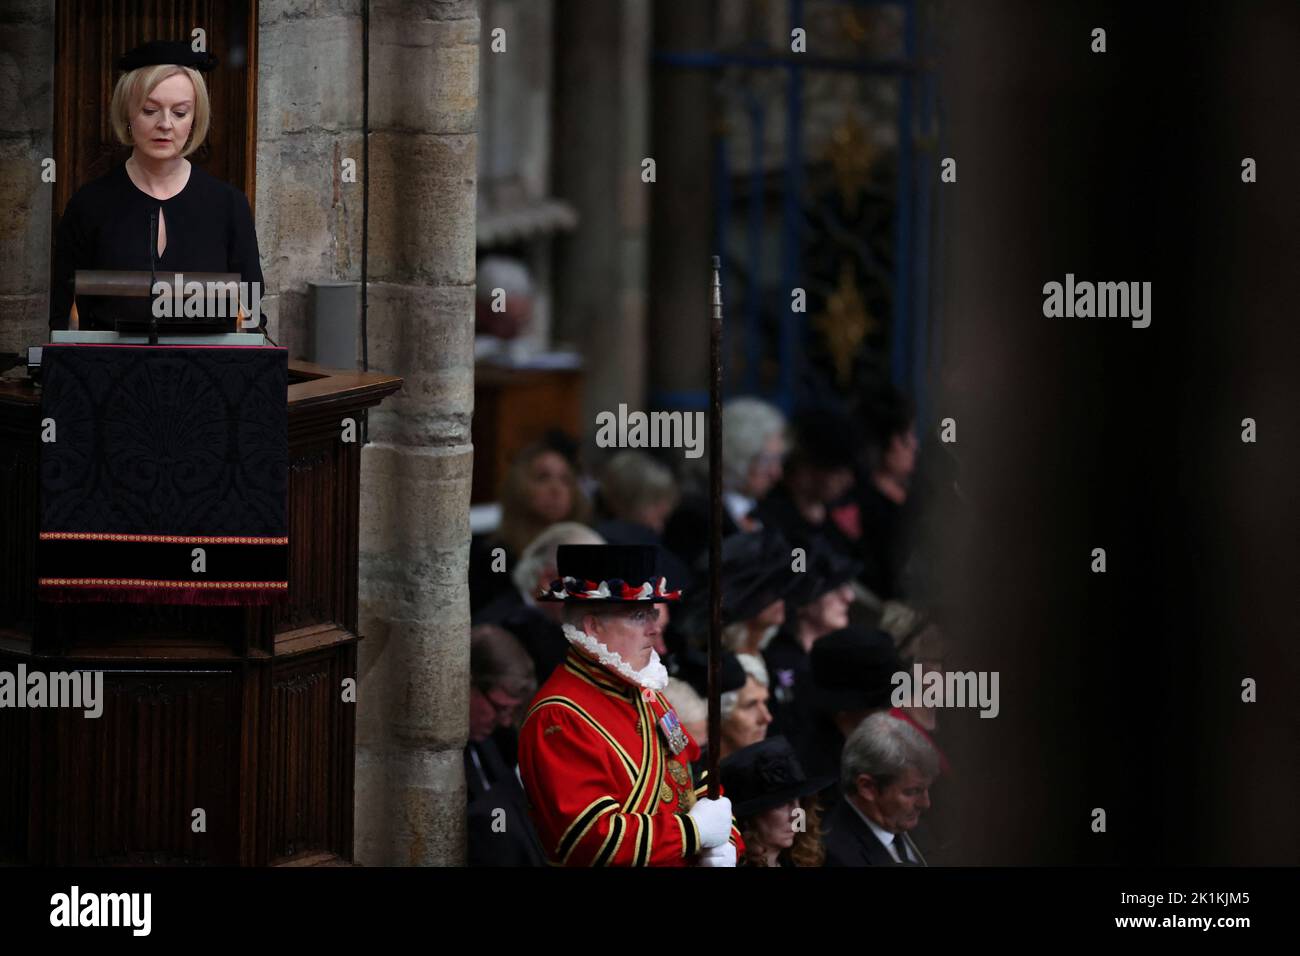 Premierministerin Liz Truss spricht während der Staatsfuneral von Königin Elizabeth II., die in Westminster Abbey, London, stattfand. Bilddatum: Montag, 19. September 2022. Stockfoto